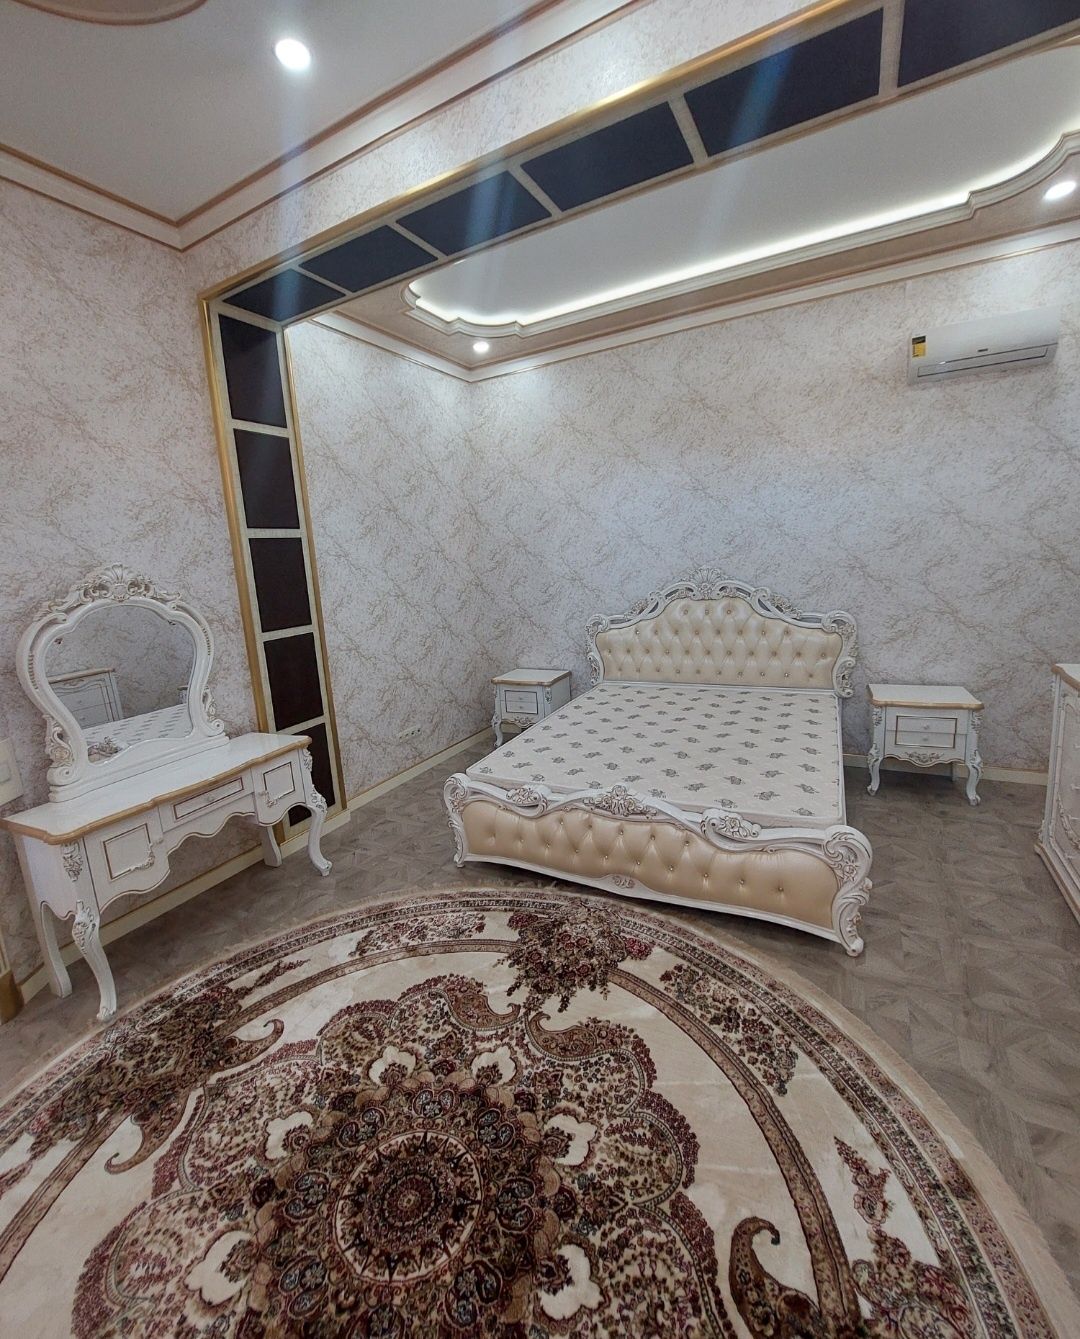 Продаётся евродом премиум класса с мебелью и техникой в Дурмени.